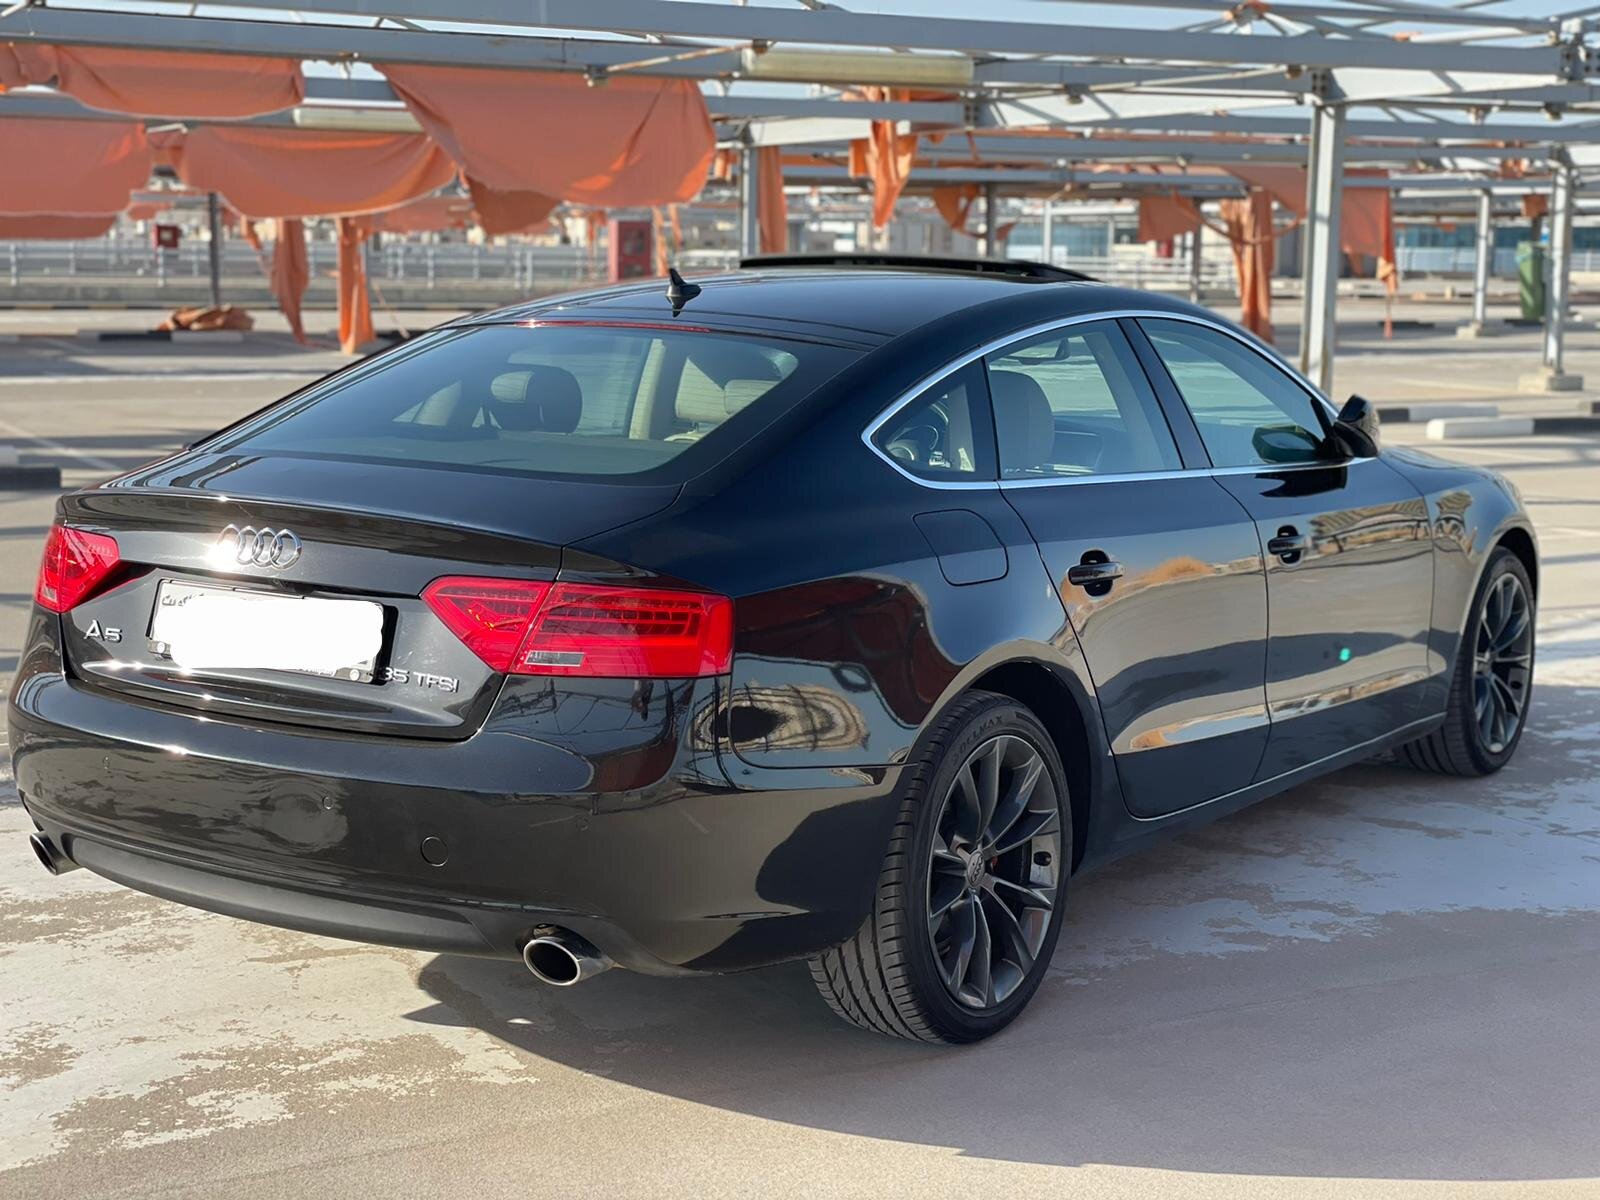 Audi a5 2015 اودي ا٥ ٢٠١٥6.jpeg